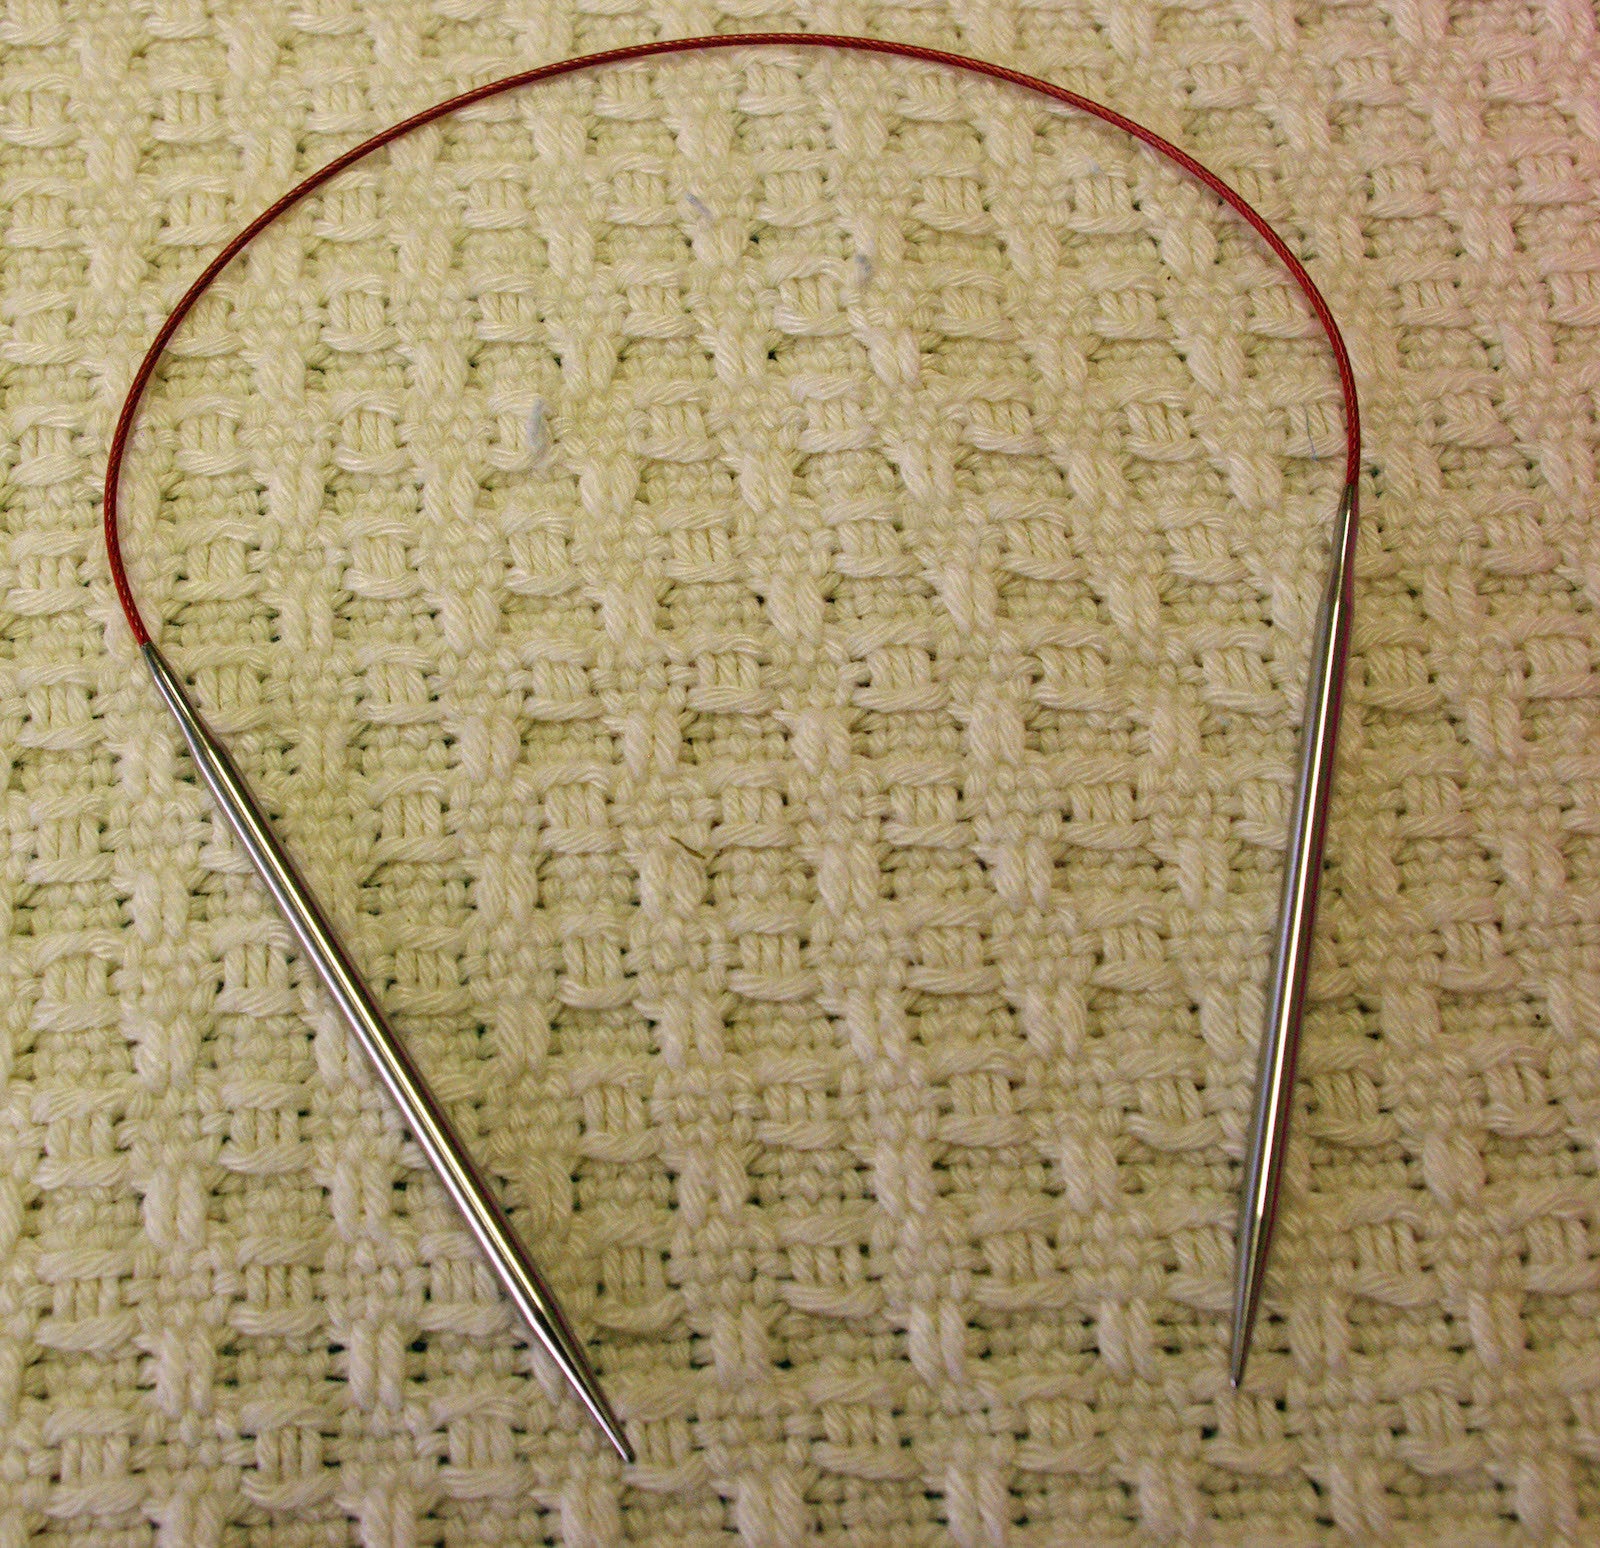 24 Circular Knitting Needles - ChiaoGoo Lace - Hazel Knits Store